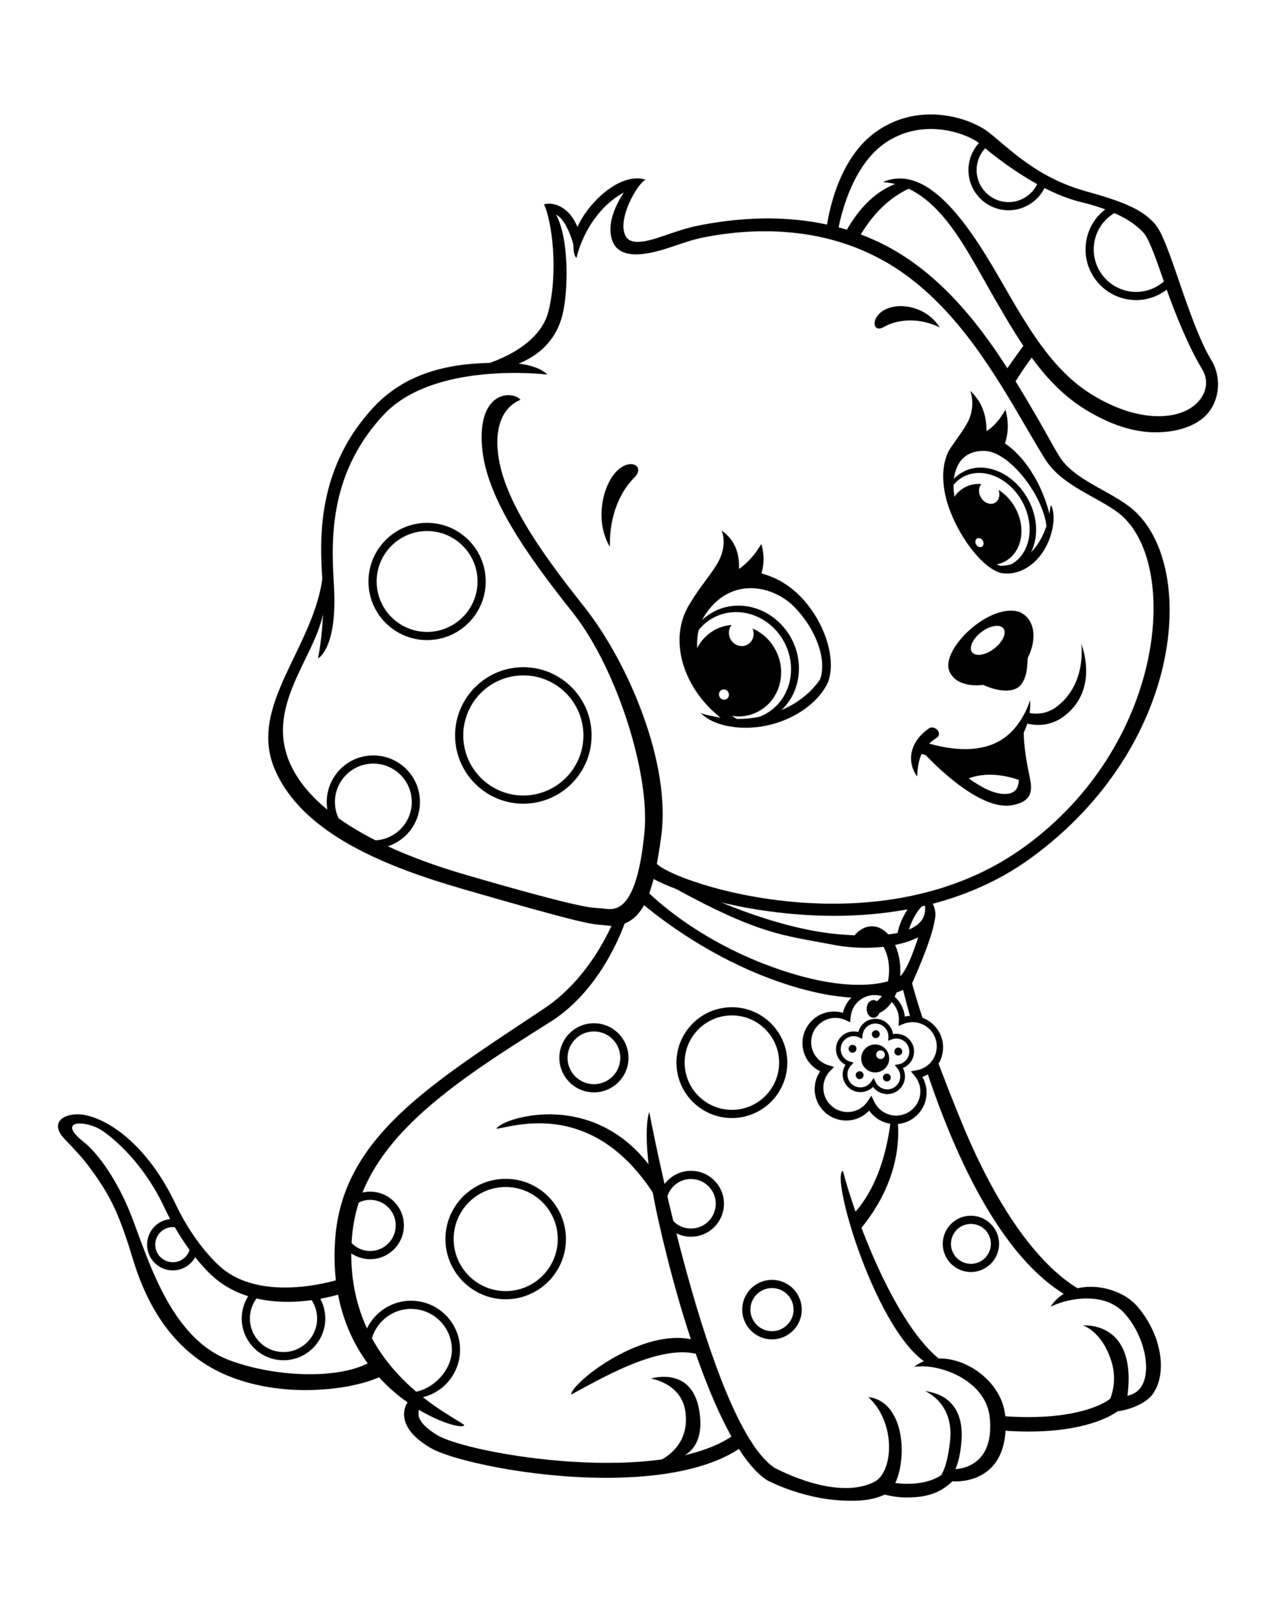 Раскраски собак и щенков распечатать для детей, милые разукрашки собачек